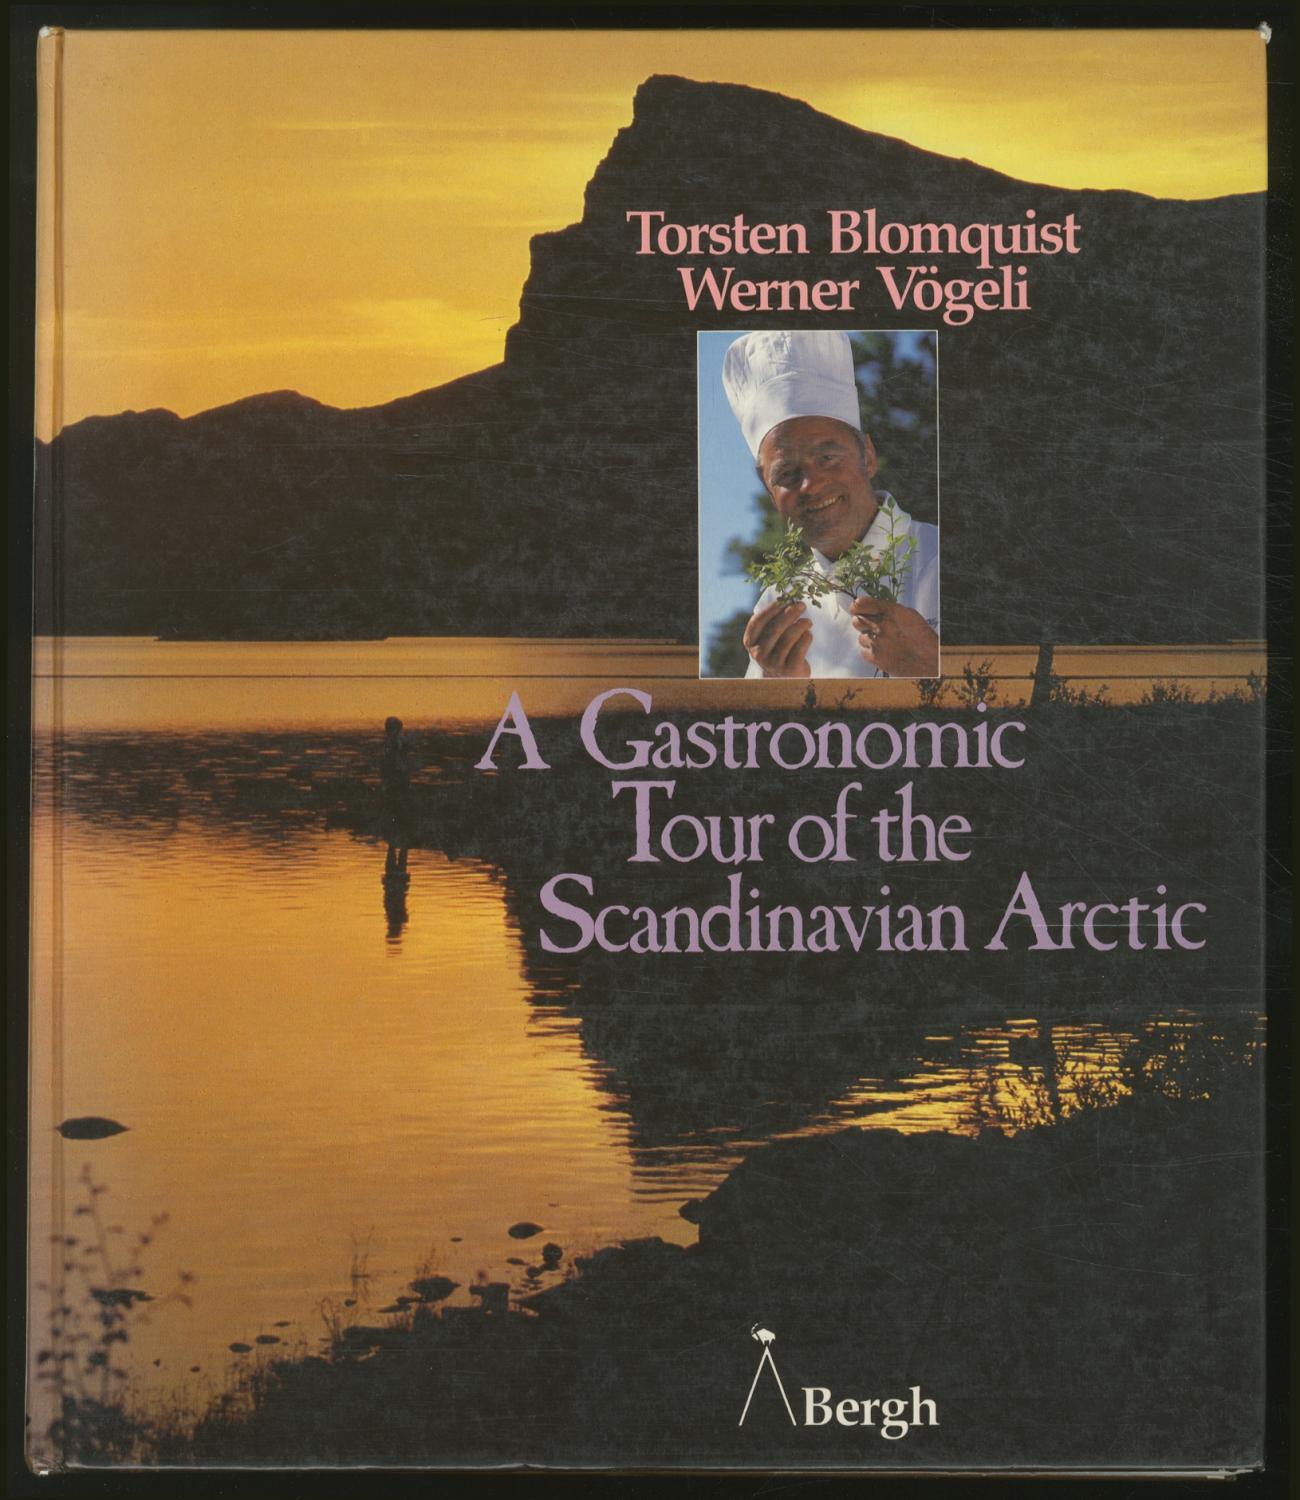 A Gastronomic Tour of the Scandinavian Arctic - BLOMQUIST, Torsten and Werner Vögeli